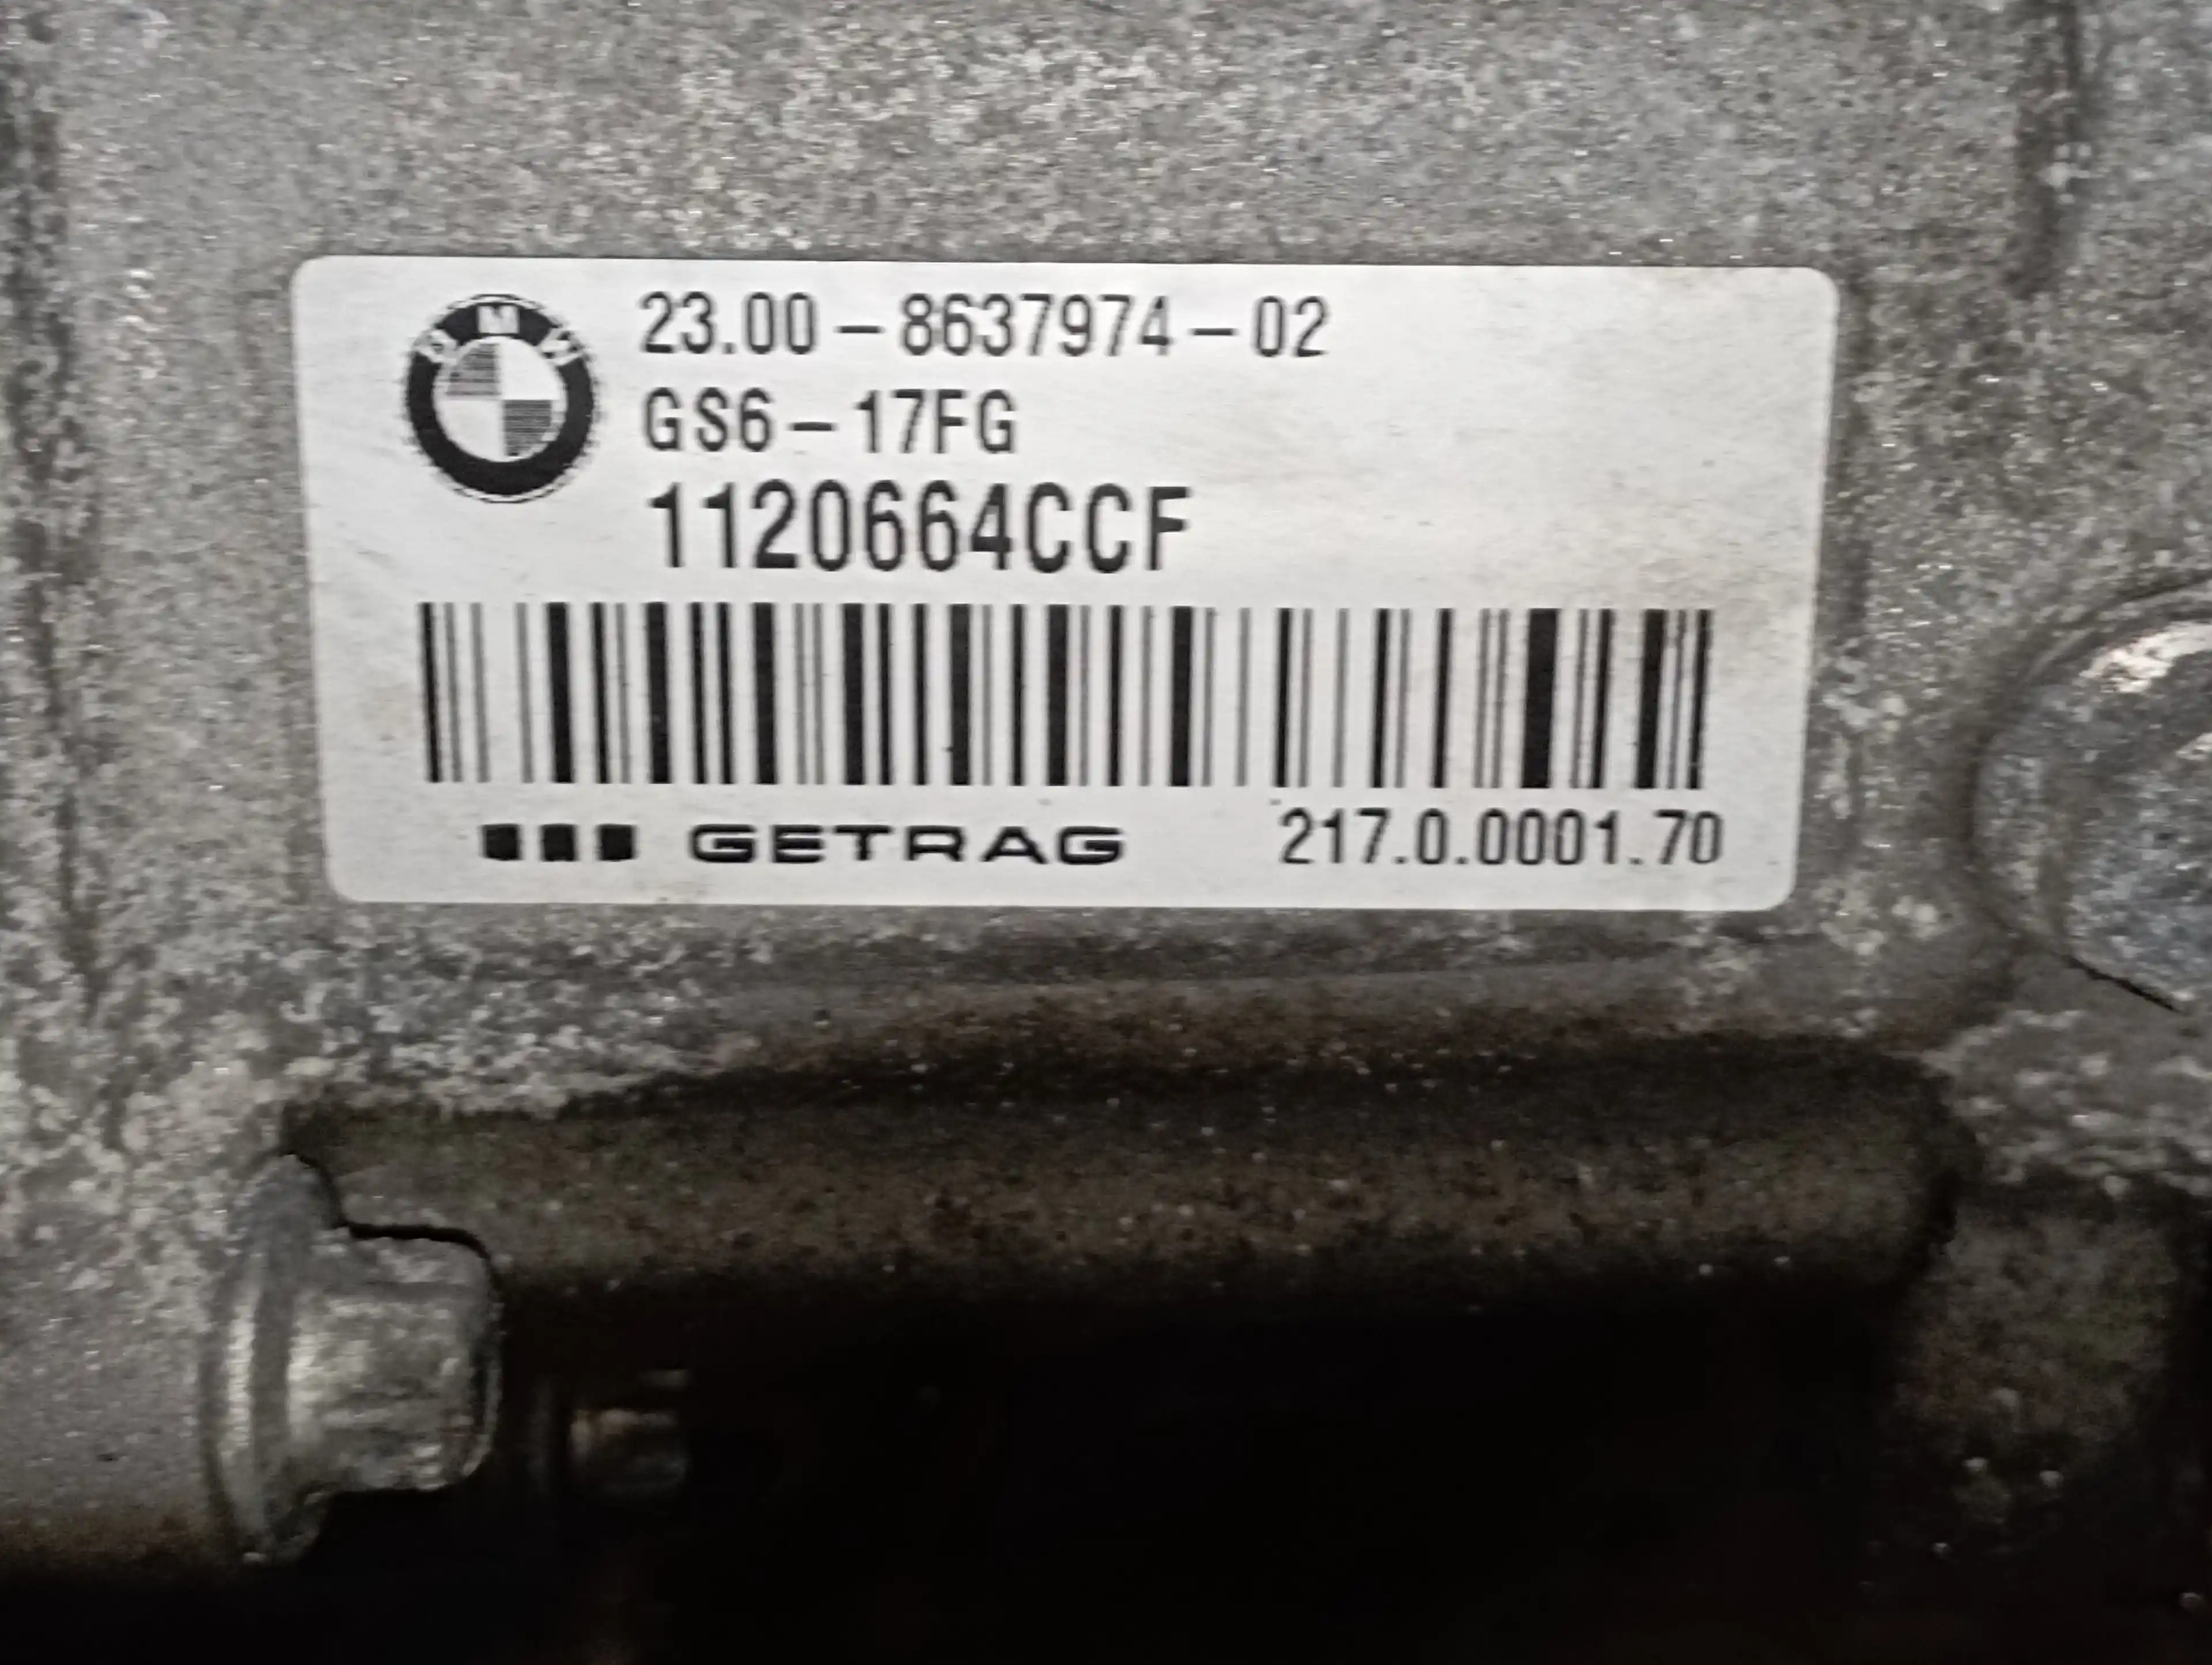 gearbox bmw serie 1 lim. (f20/f21) 1.6 16v gs6-17fg 23.00-8637974-02  gs617fg ccf